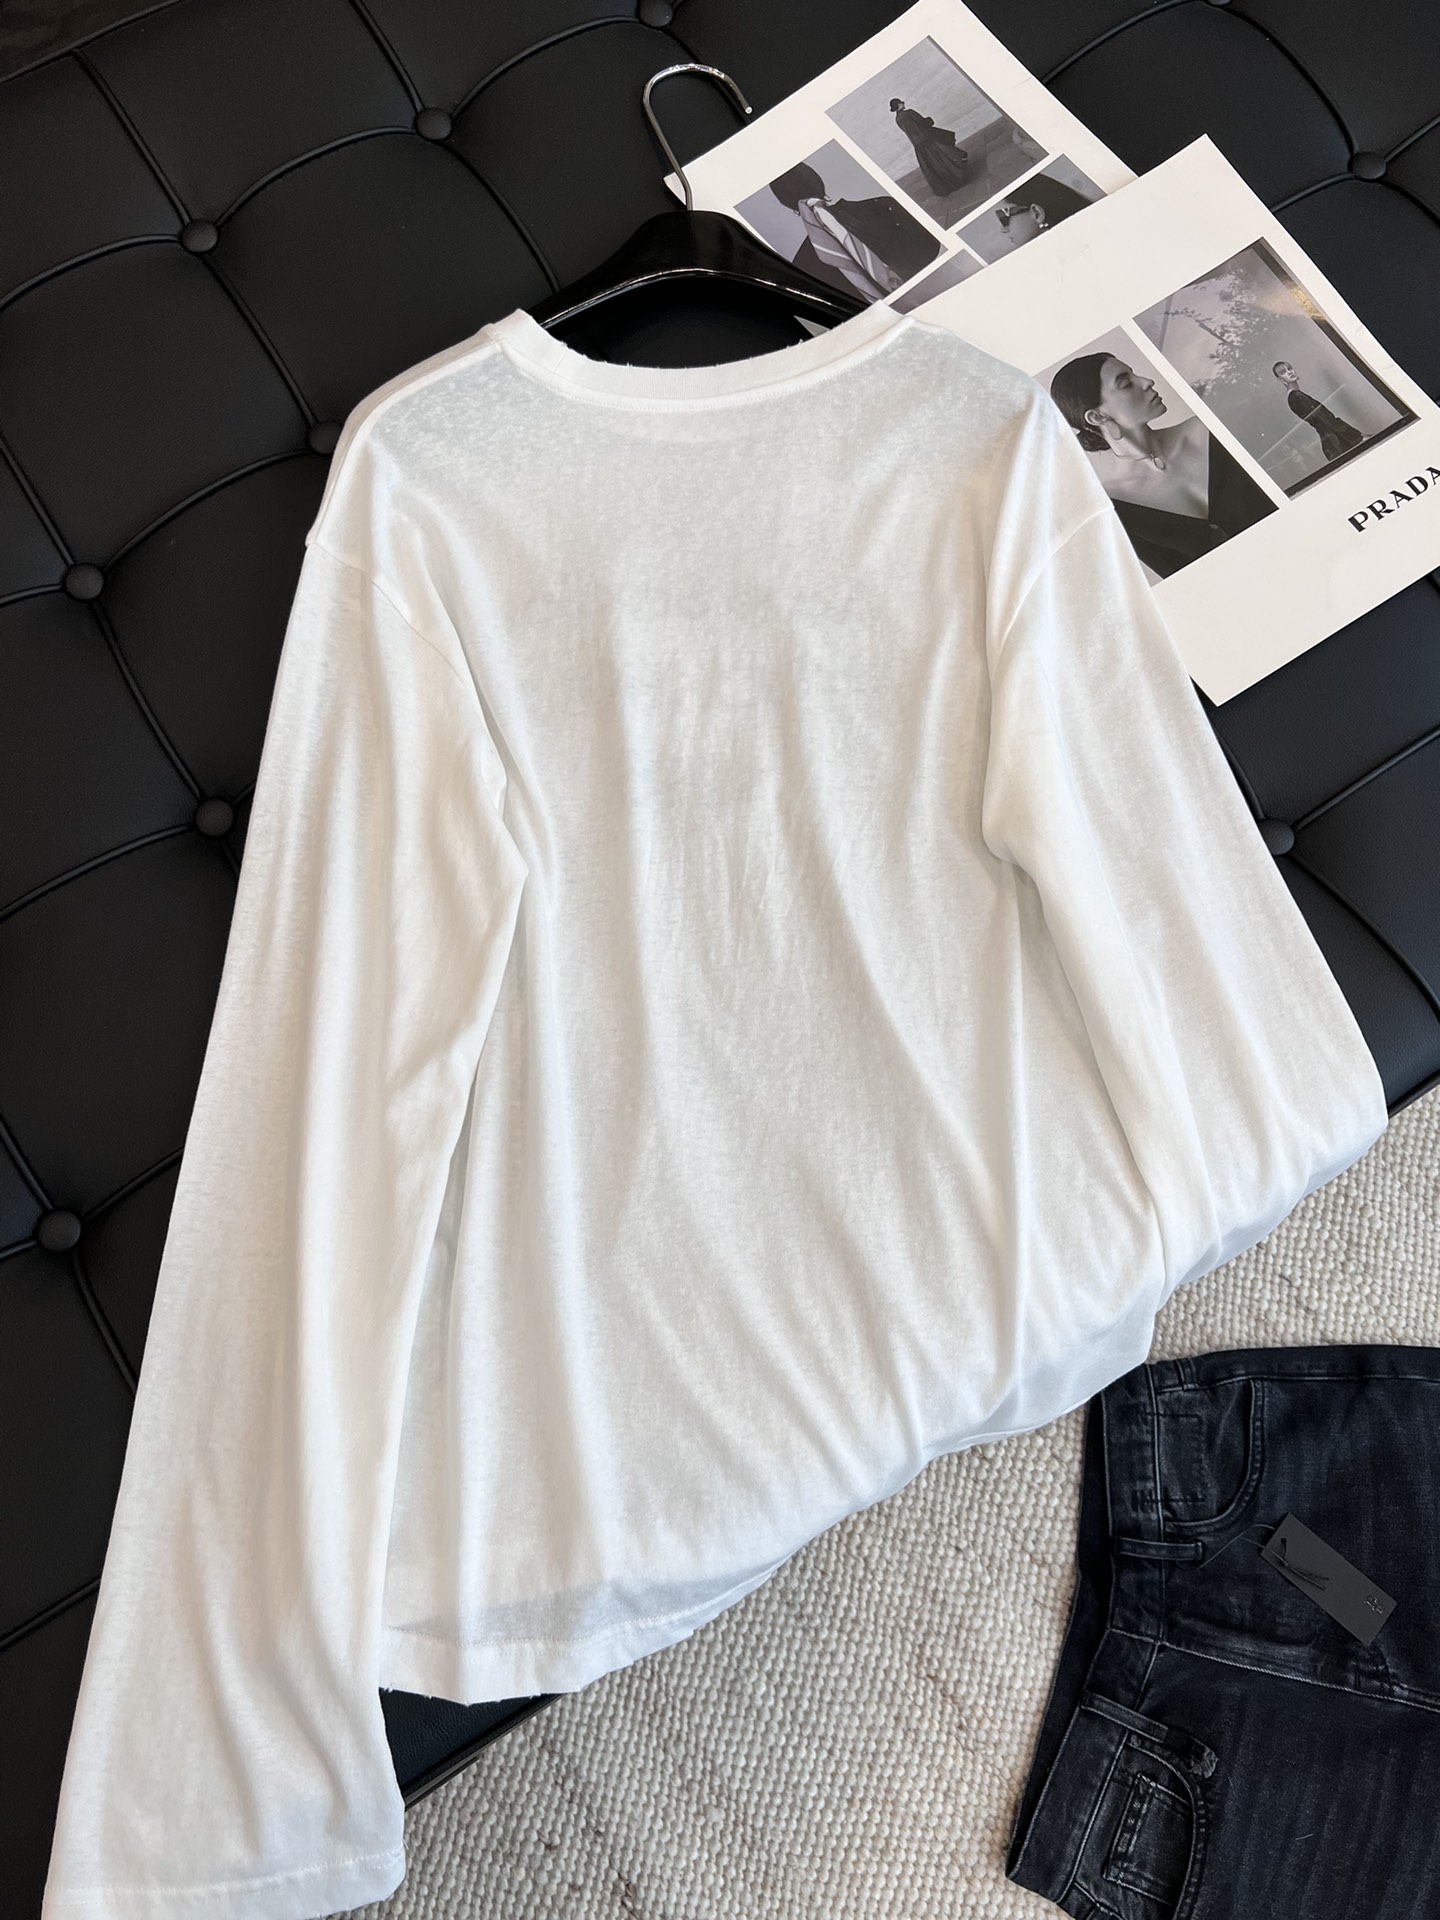 お買い得豊富な アクネストゥディオズ とはコピー 純綿 Tシャツ 長袖 柔らかい プリント 日焼け止め ホワイト_6